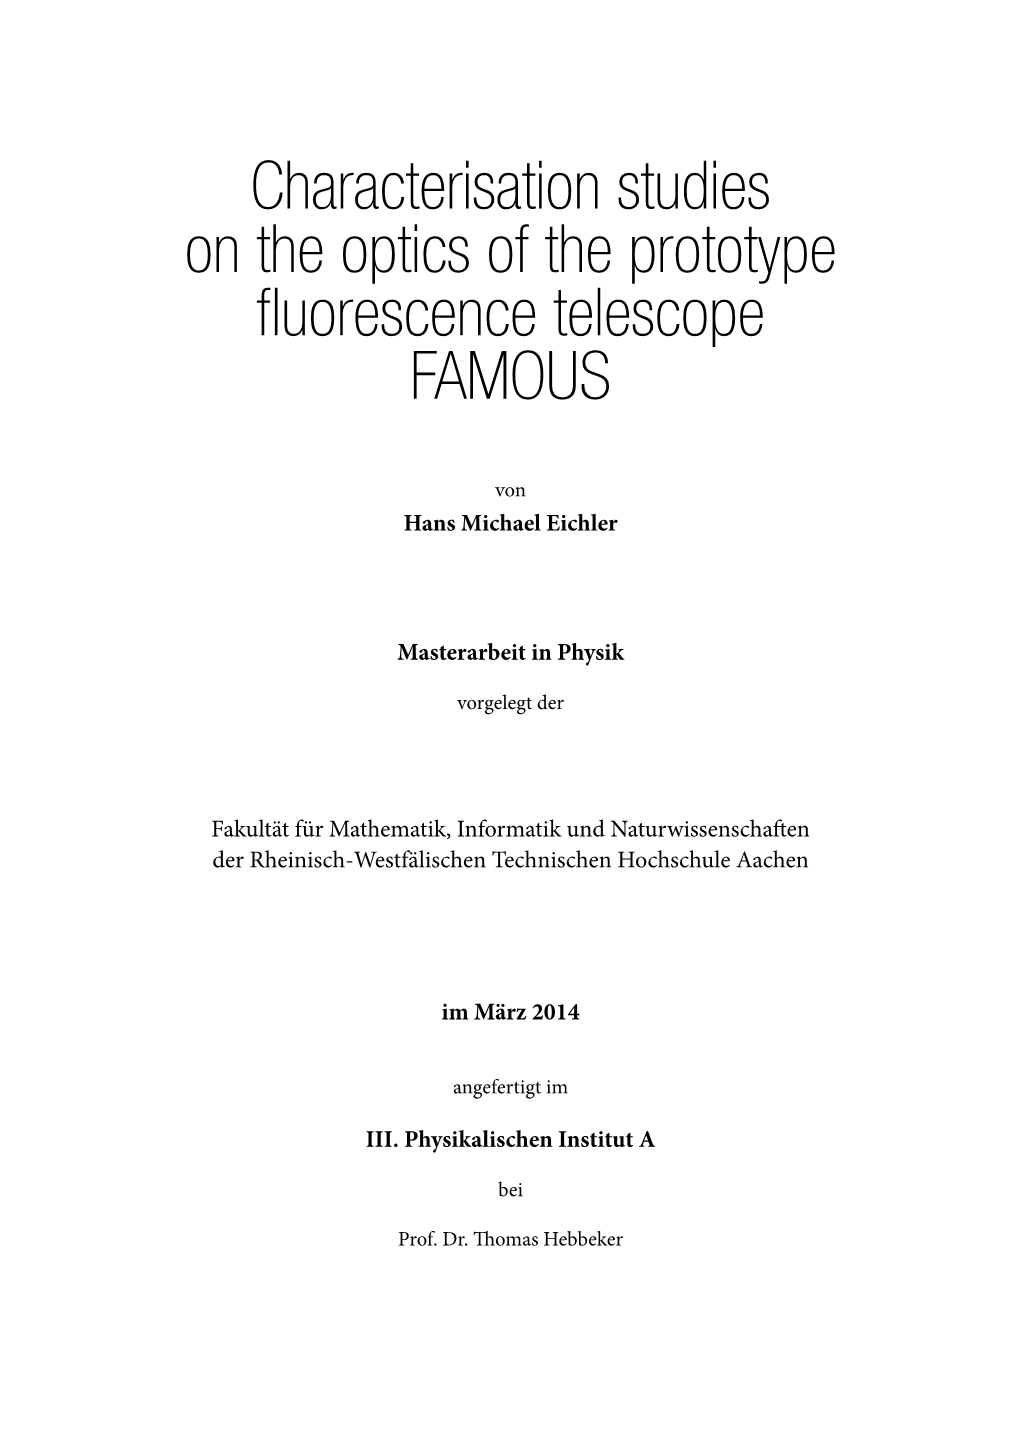 Characterisation Studies on the Optics of the Prototype Fluorescence Telescope FAMOUS